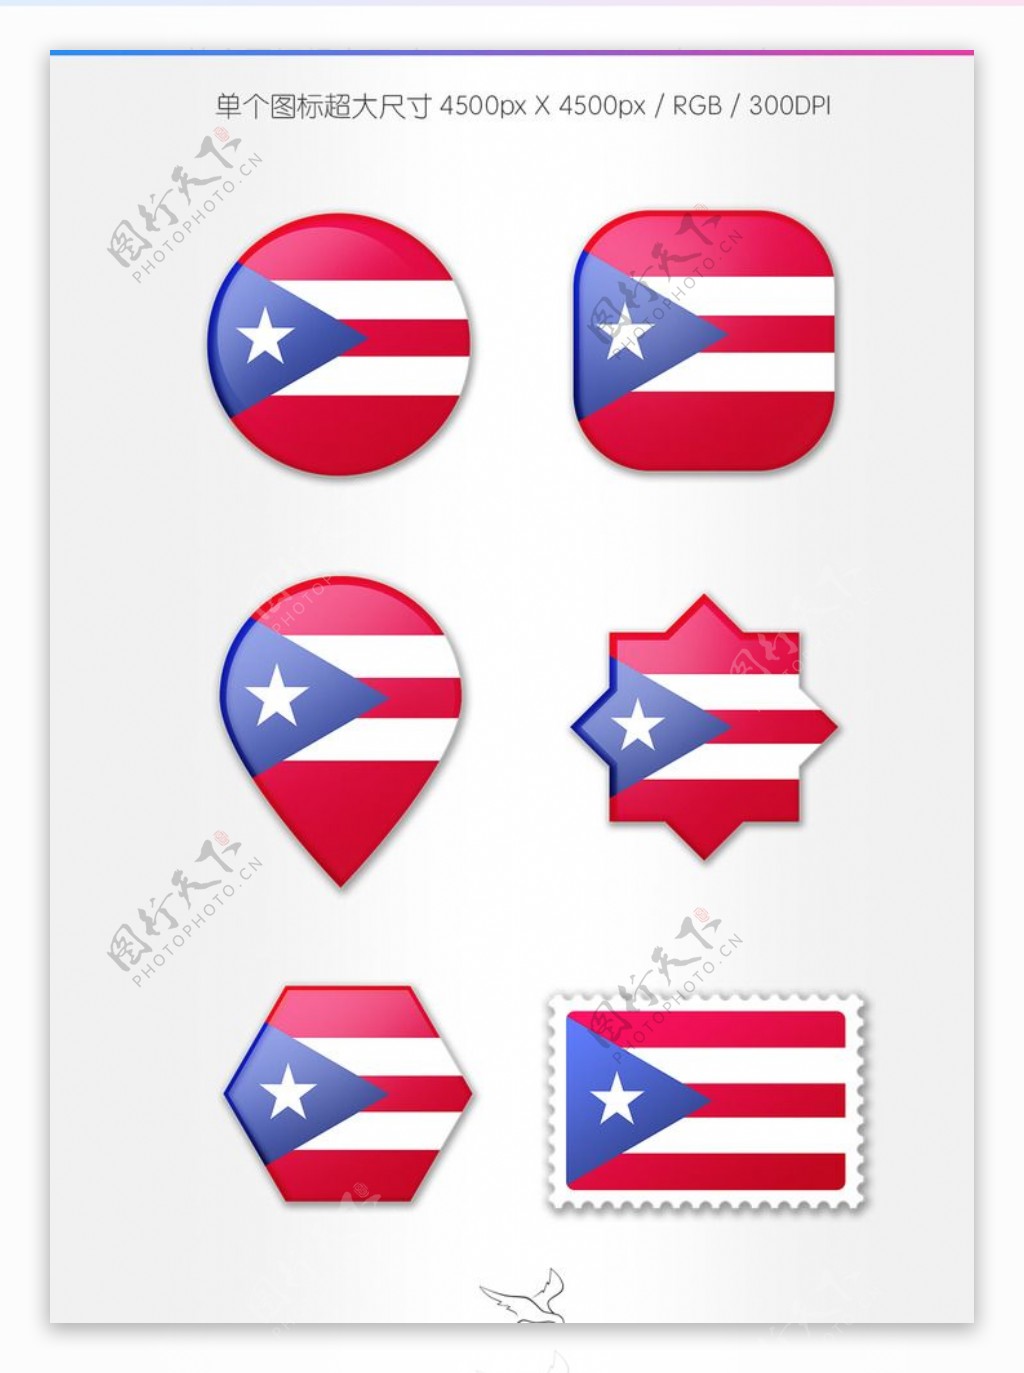 波多黎各国旗图标